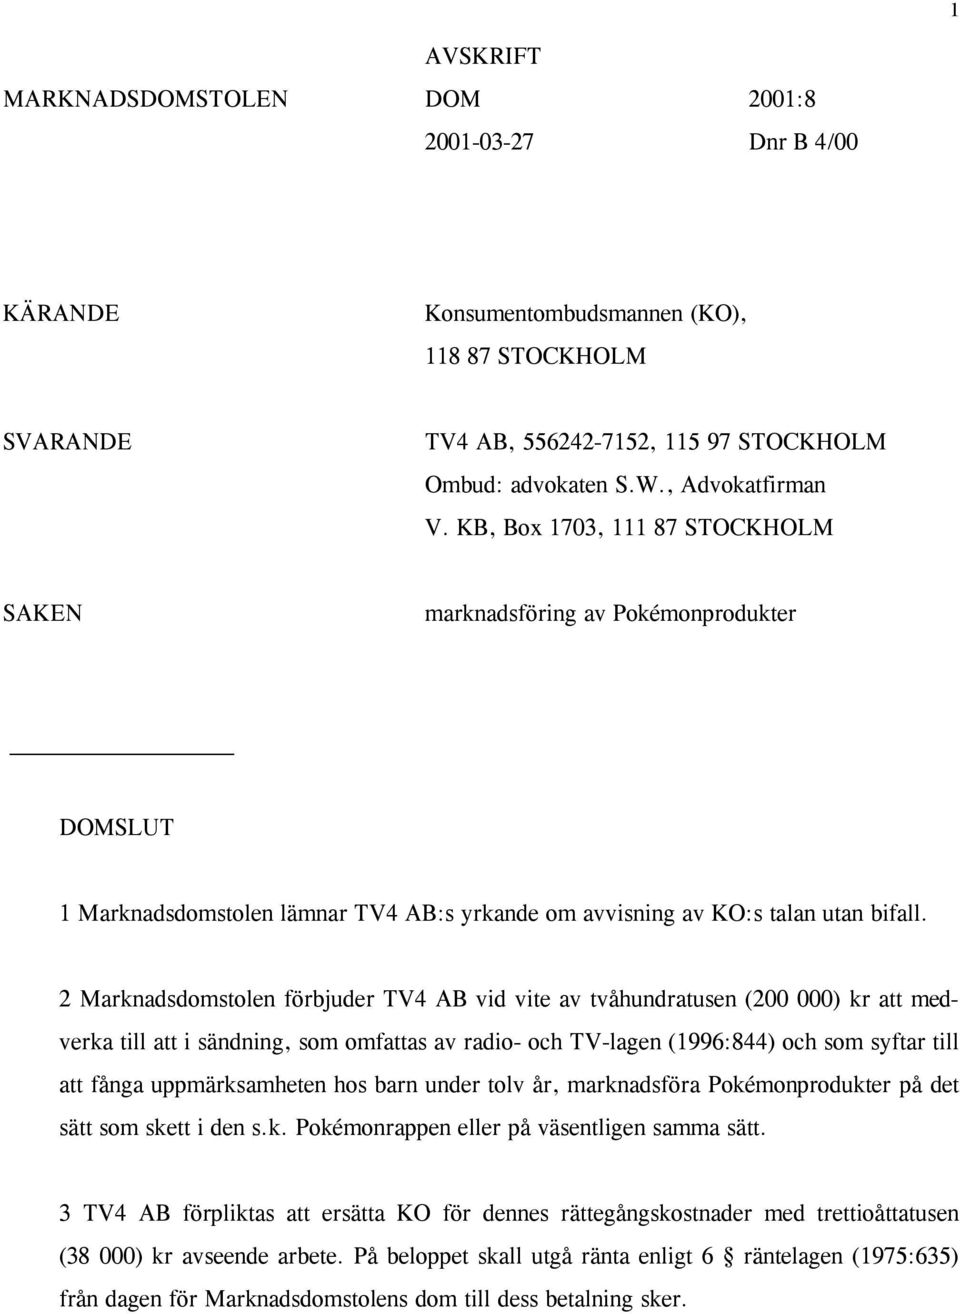 2 Marknadsdomstolen förbjuder TV4 AB vid vite av tvåhundratusen (200 000) kr att medverka till att i sändning, som omfattas av radio- och TV-lagen (1996:844) och som syftar till att fånga